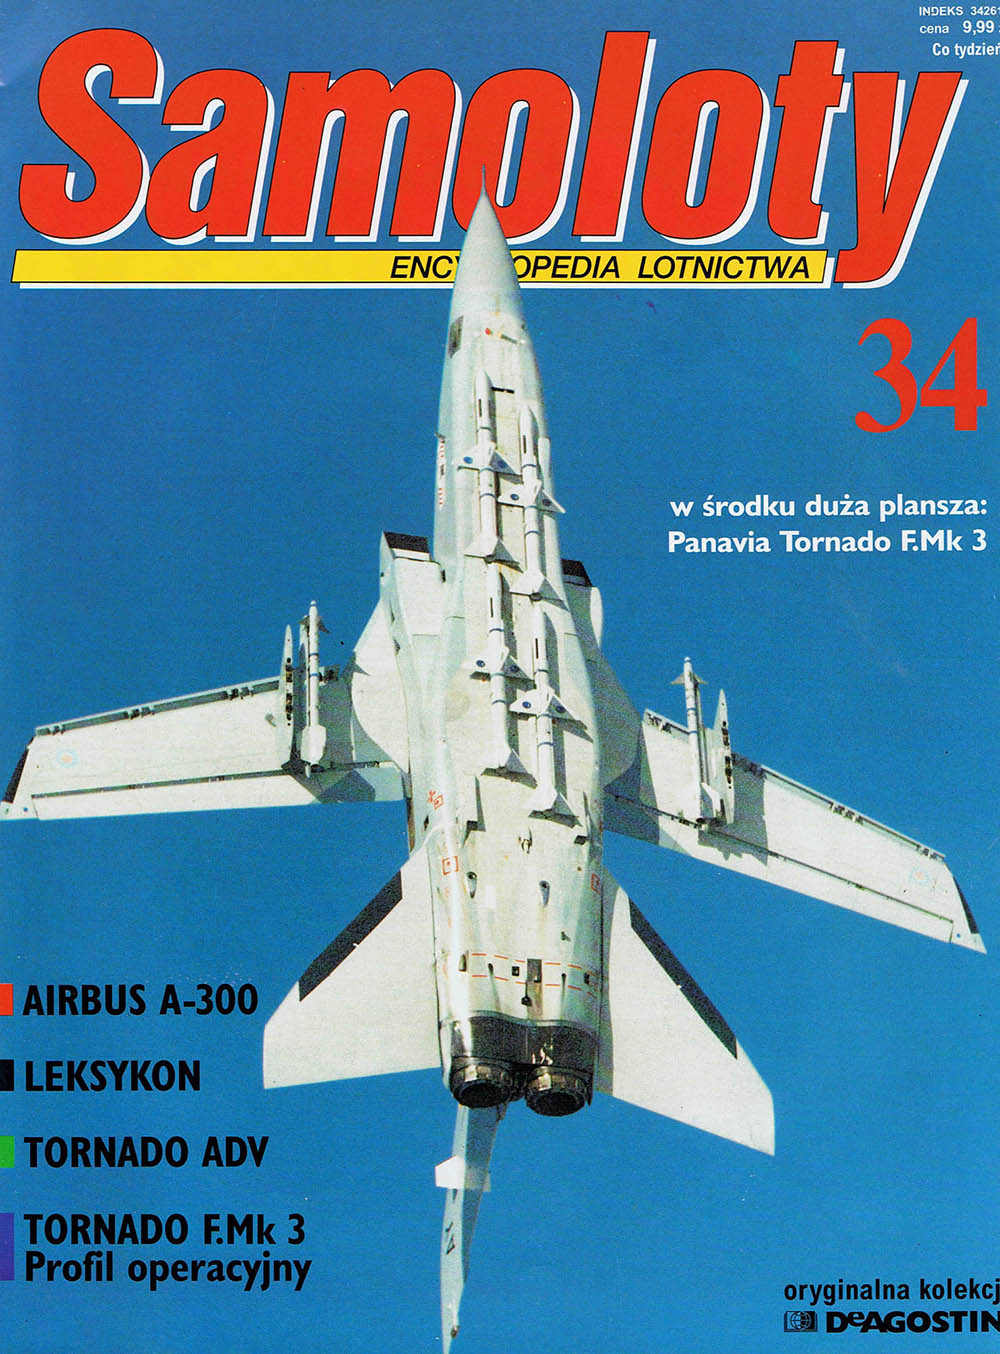 Samoloty - Encyklopedia lotnictwa - 034.jpg